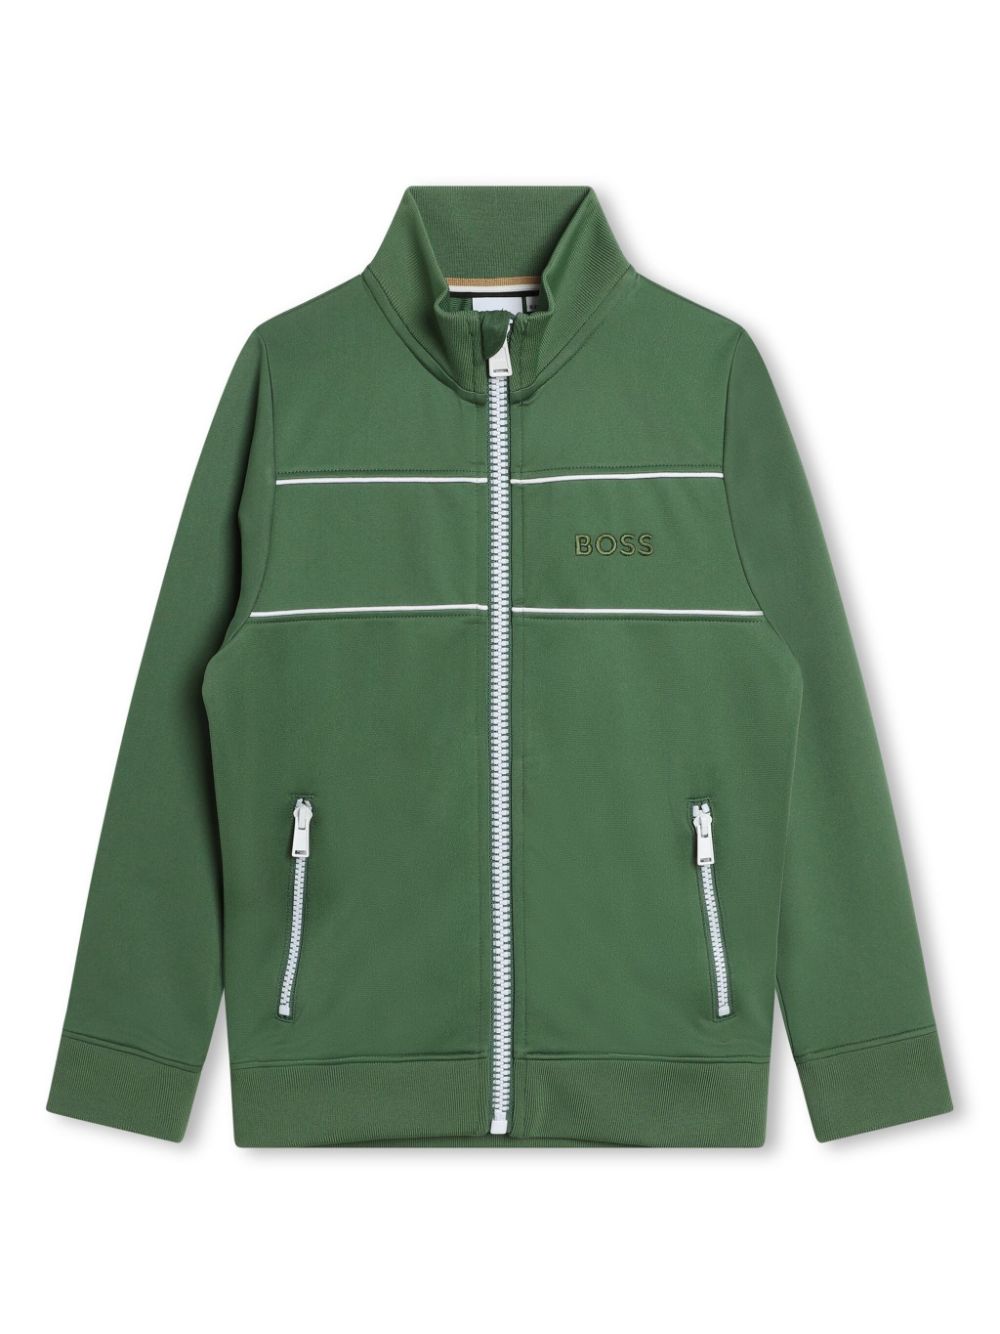 Bosswear Kids' Logo-embroidered Zipped Jacket In Green